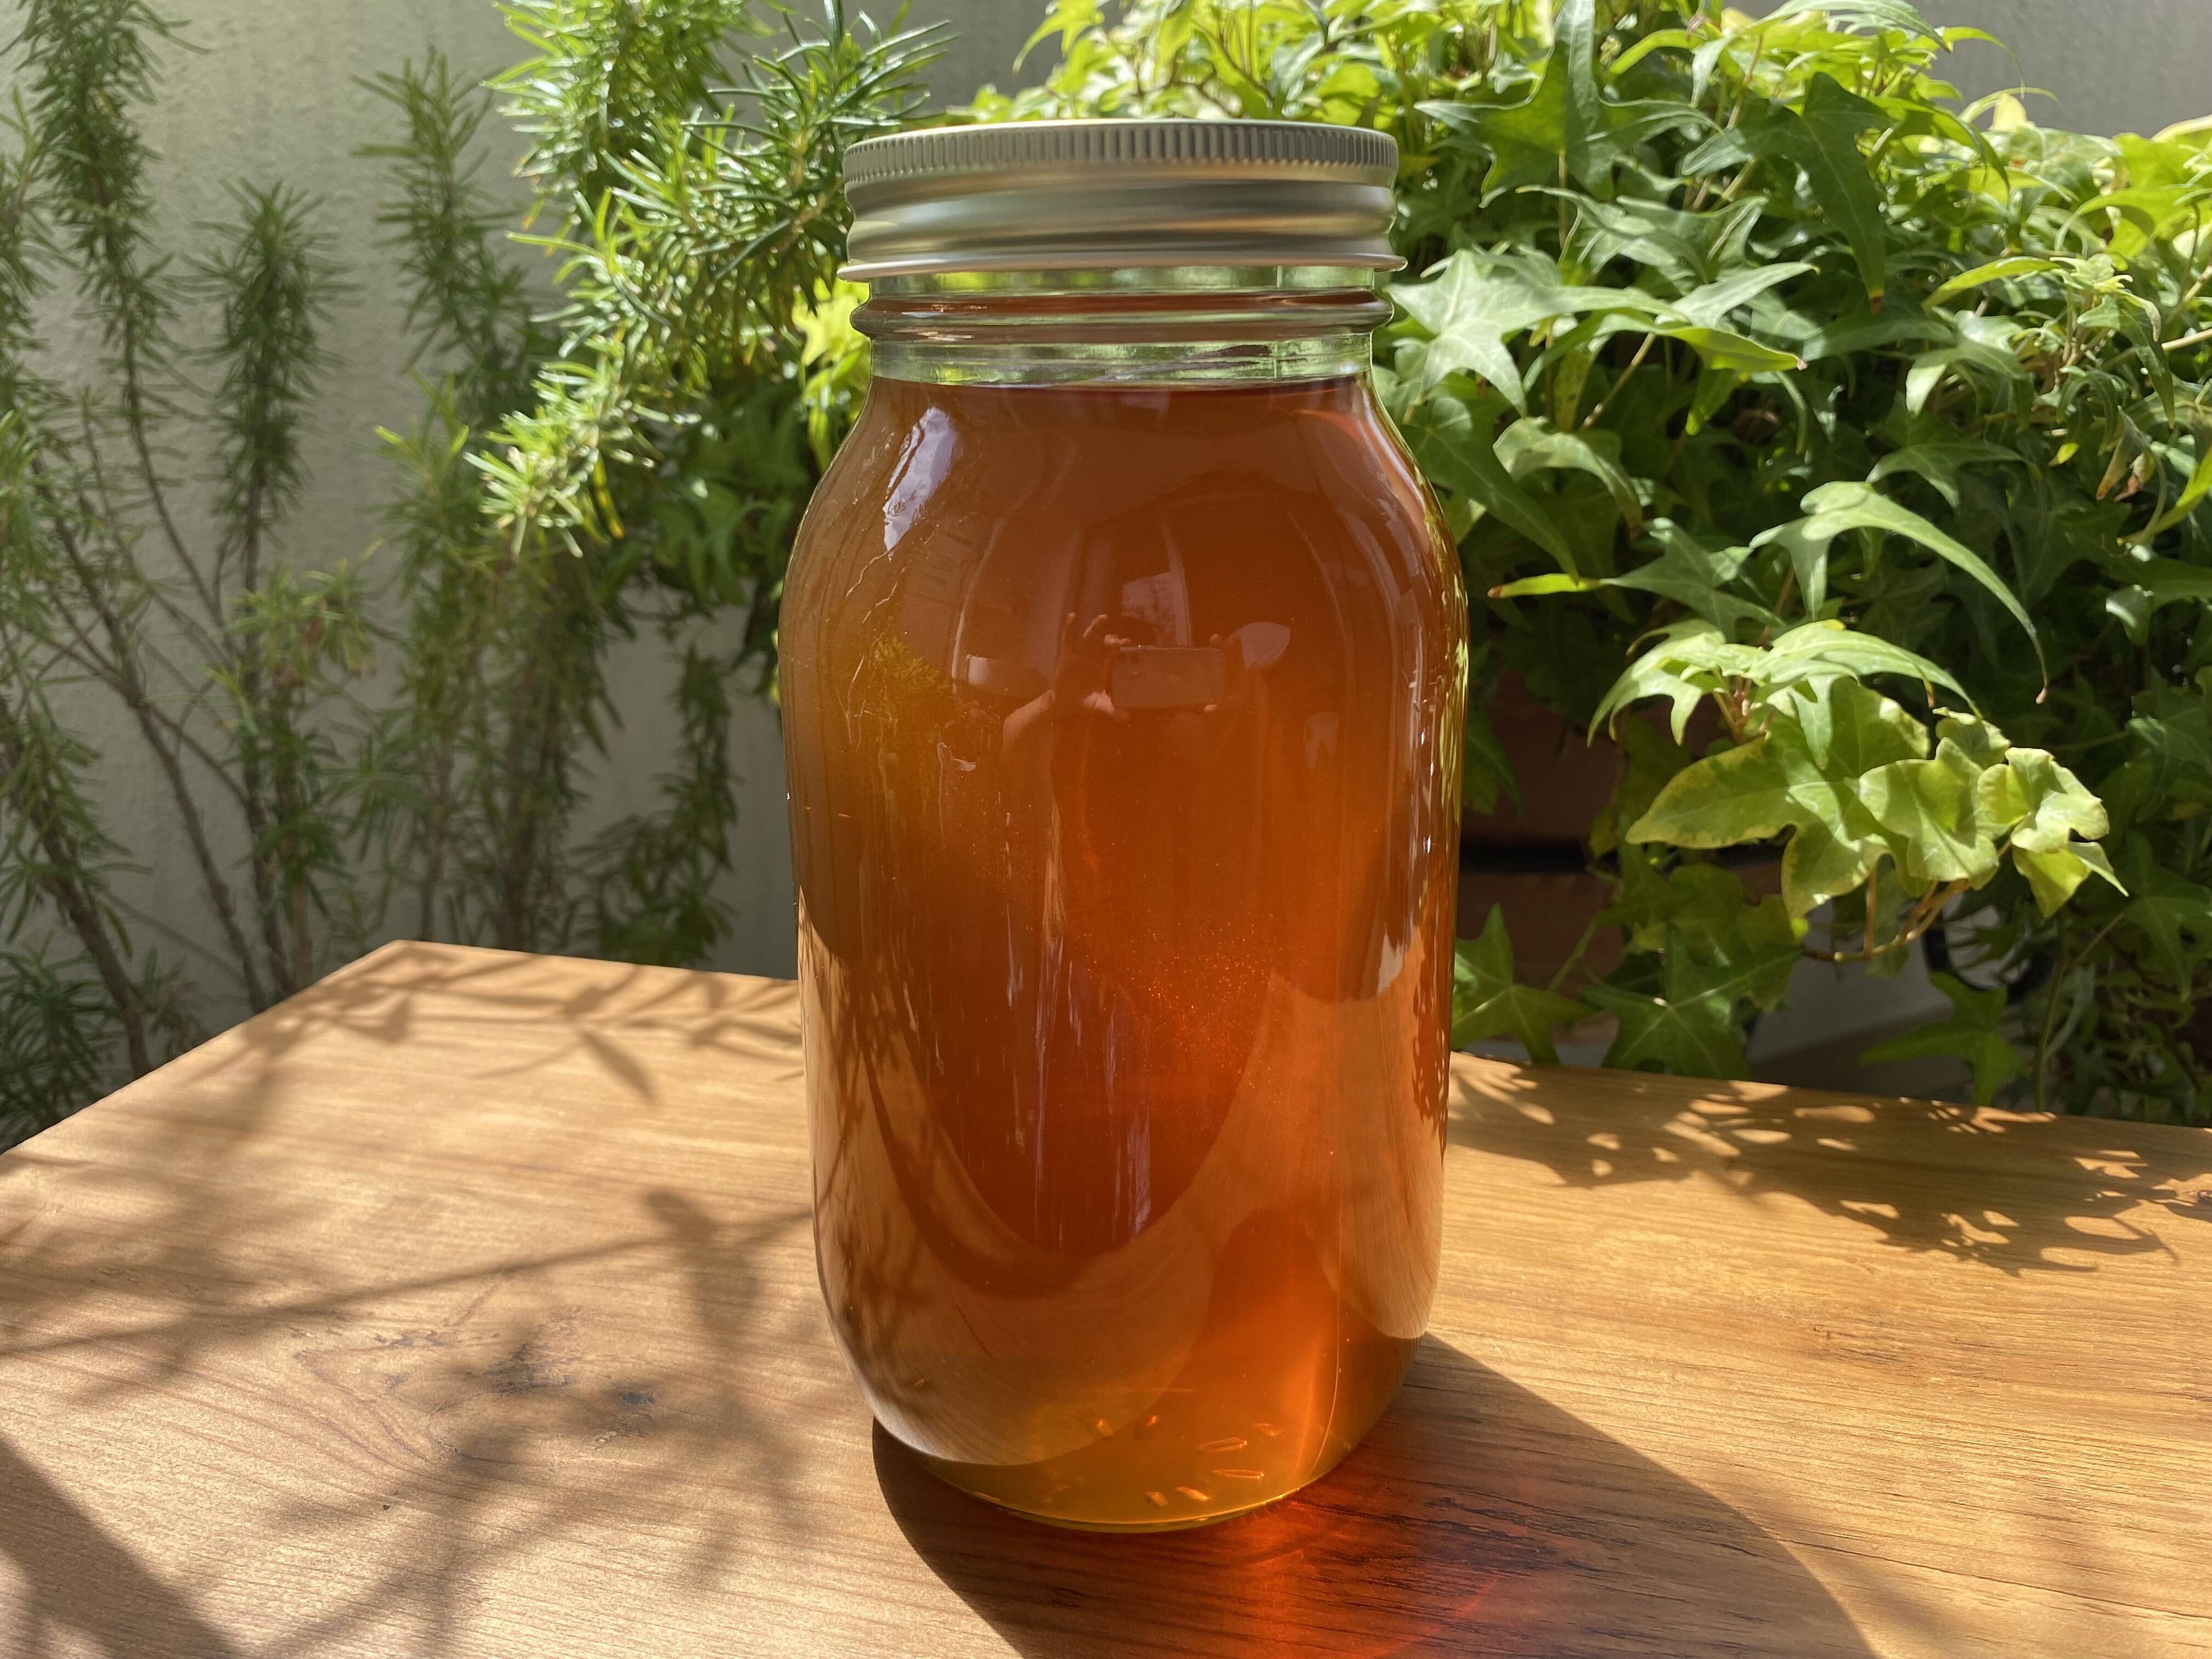 日本蜜蜂の2年熟成生ハチミ1200g+220g×3個+ 100g小瓶おまけ付き 非加熱